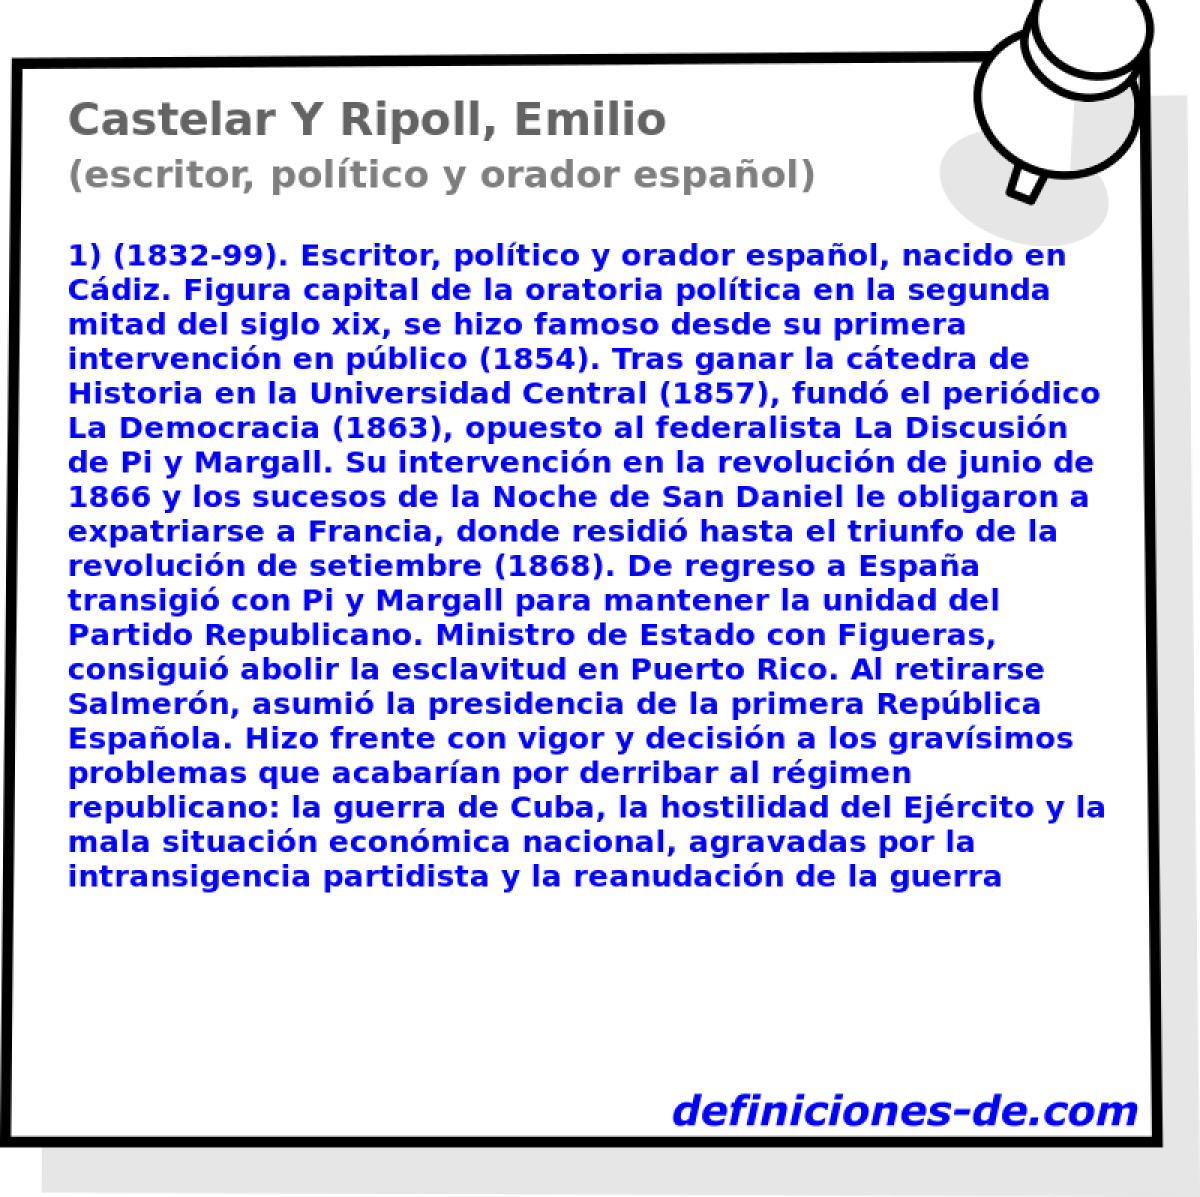 Castelar Y Ripoll, Emilio (escritor, poltico y orador espaol)